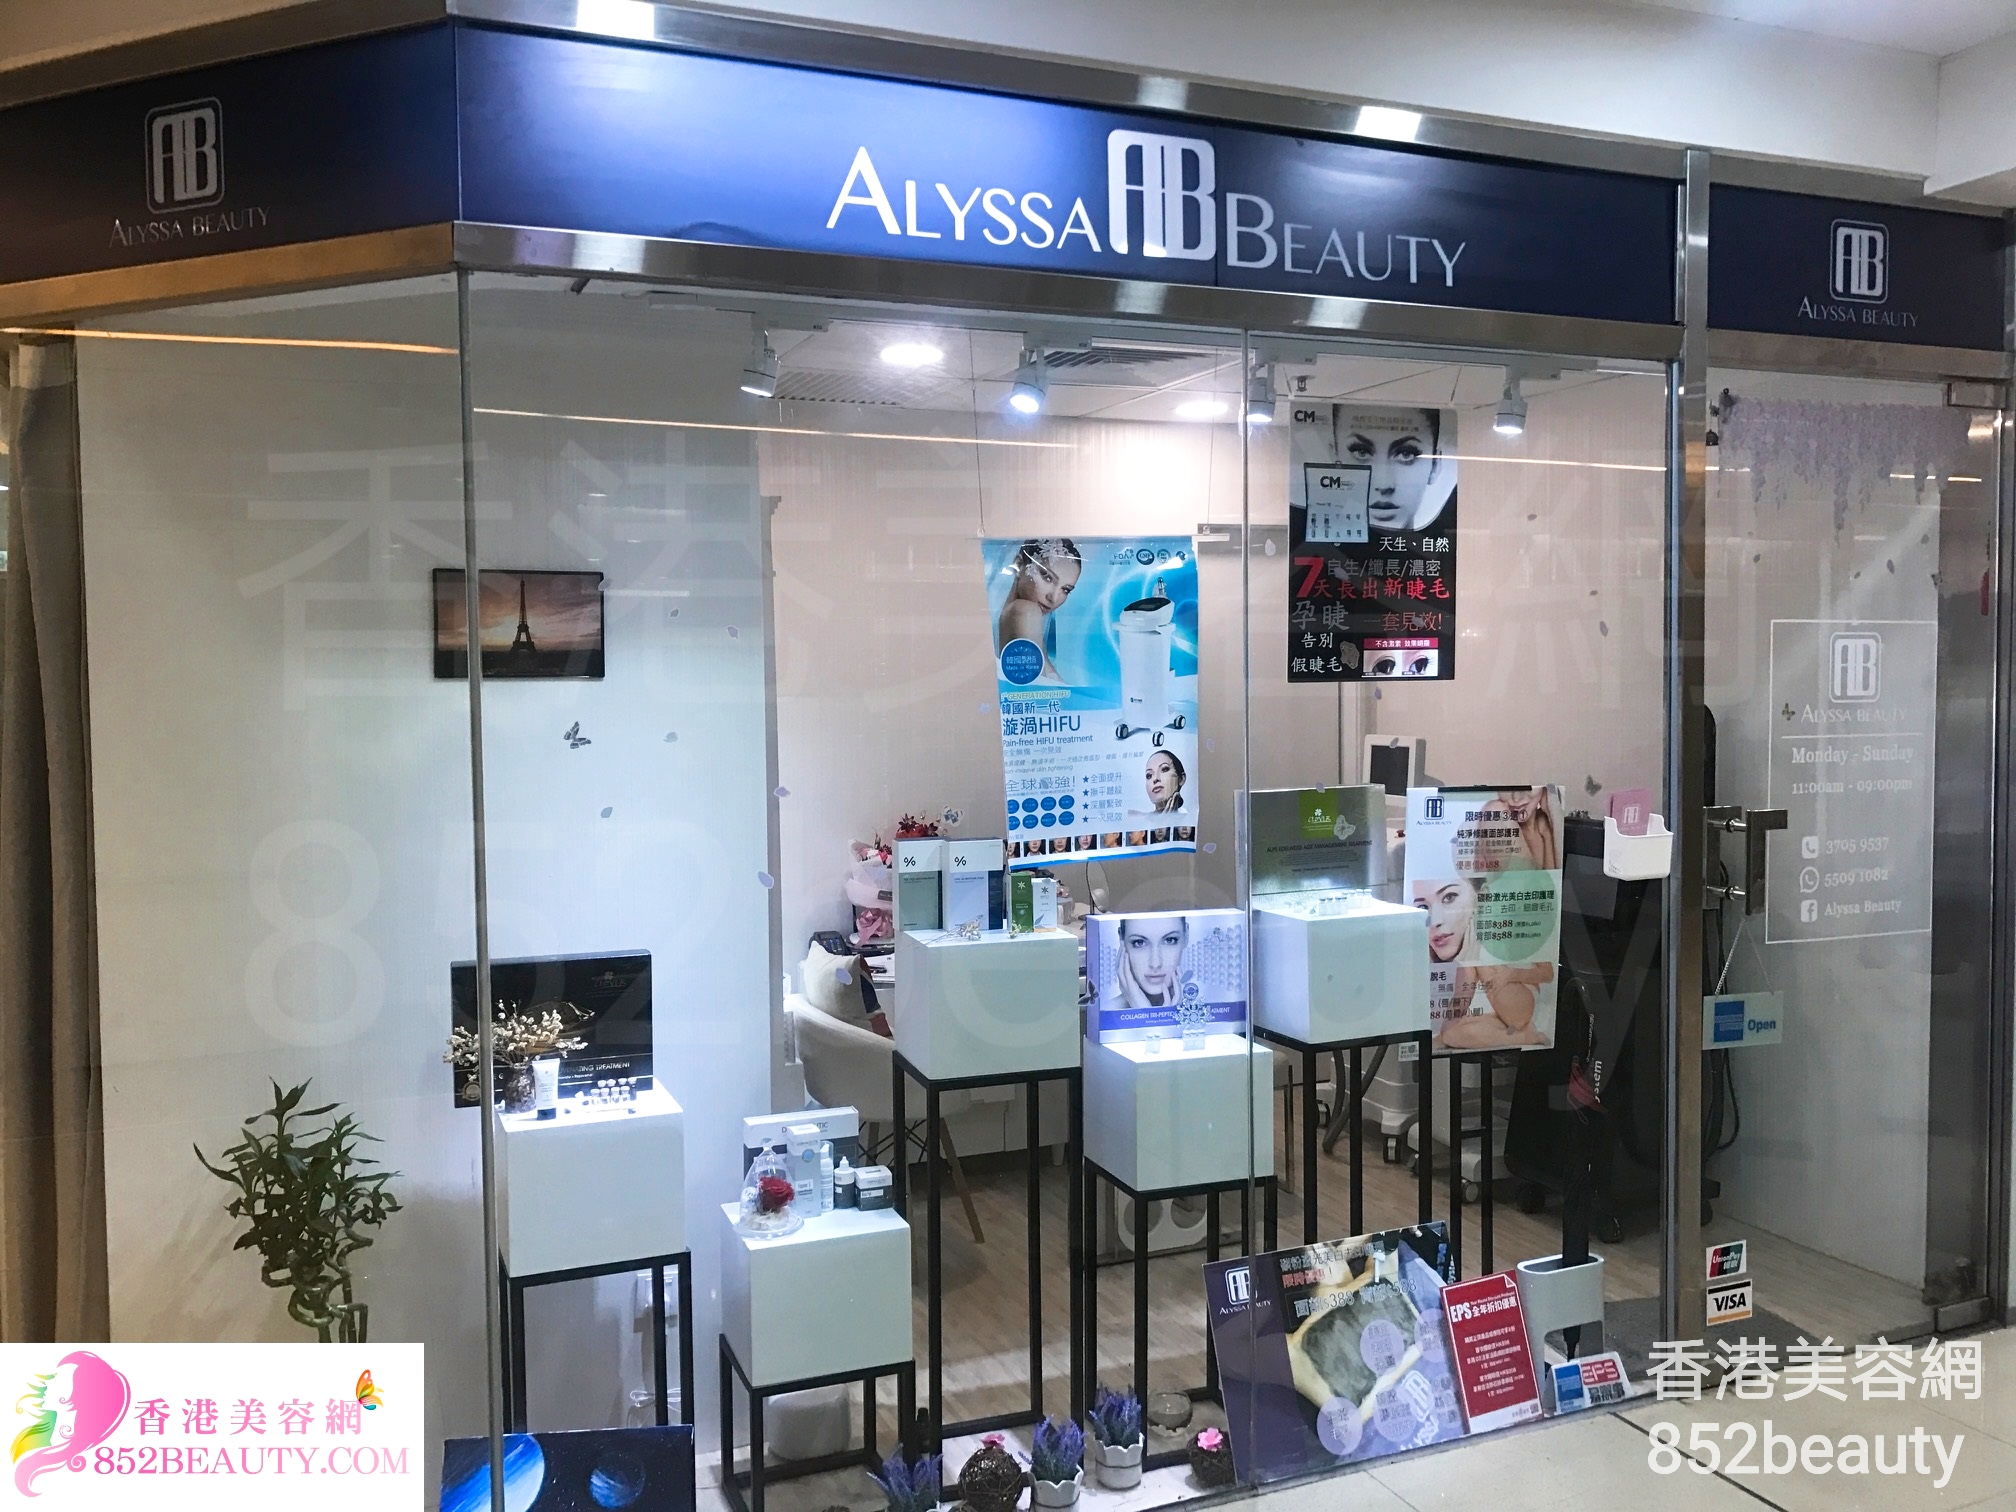 香港美容網 Hong Kong Beauty Salon 美容院 / 美容師: Alyssa Beauty (馬鞍山店)